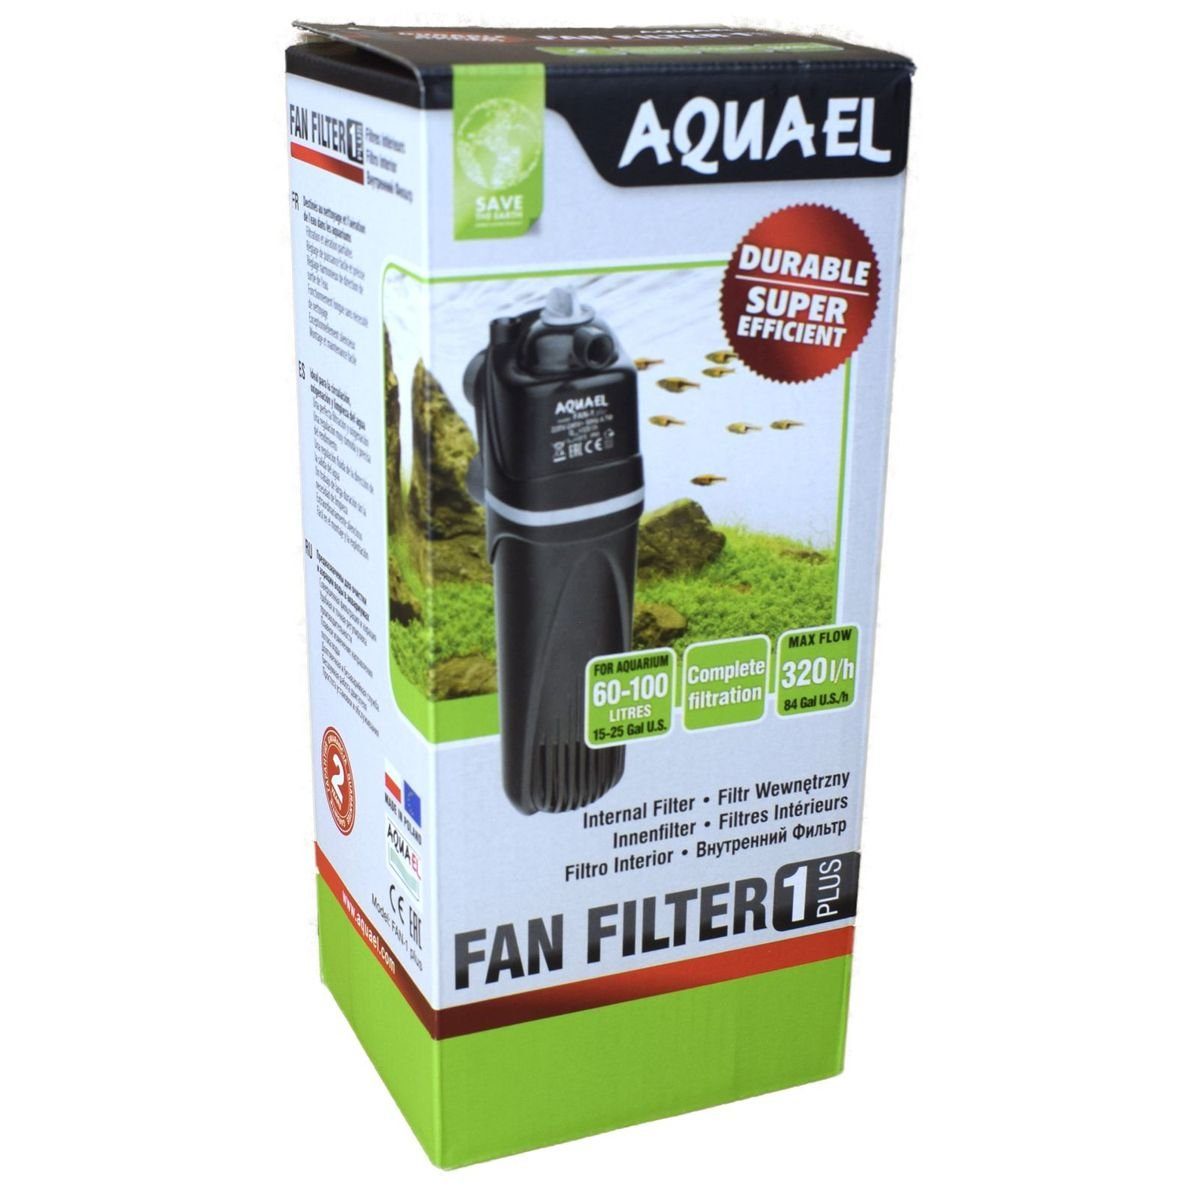 Aquael Aquariumfilter Innenfilter Fan Filter Plus für verschiedene Aquariengrößen in Schwarz, besonders leise